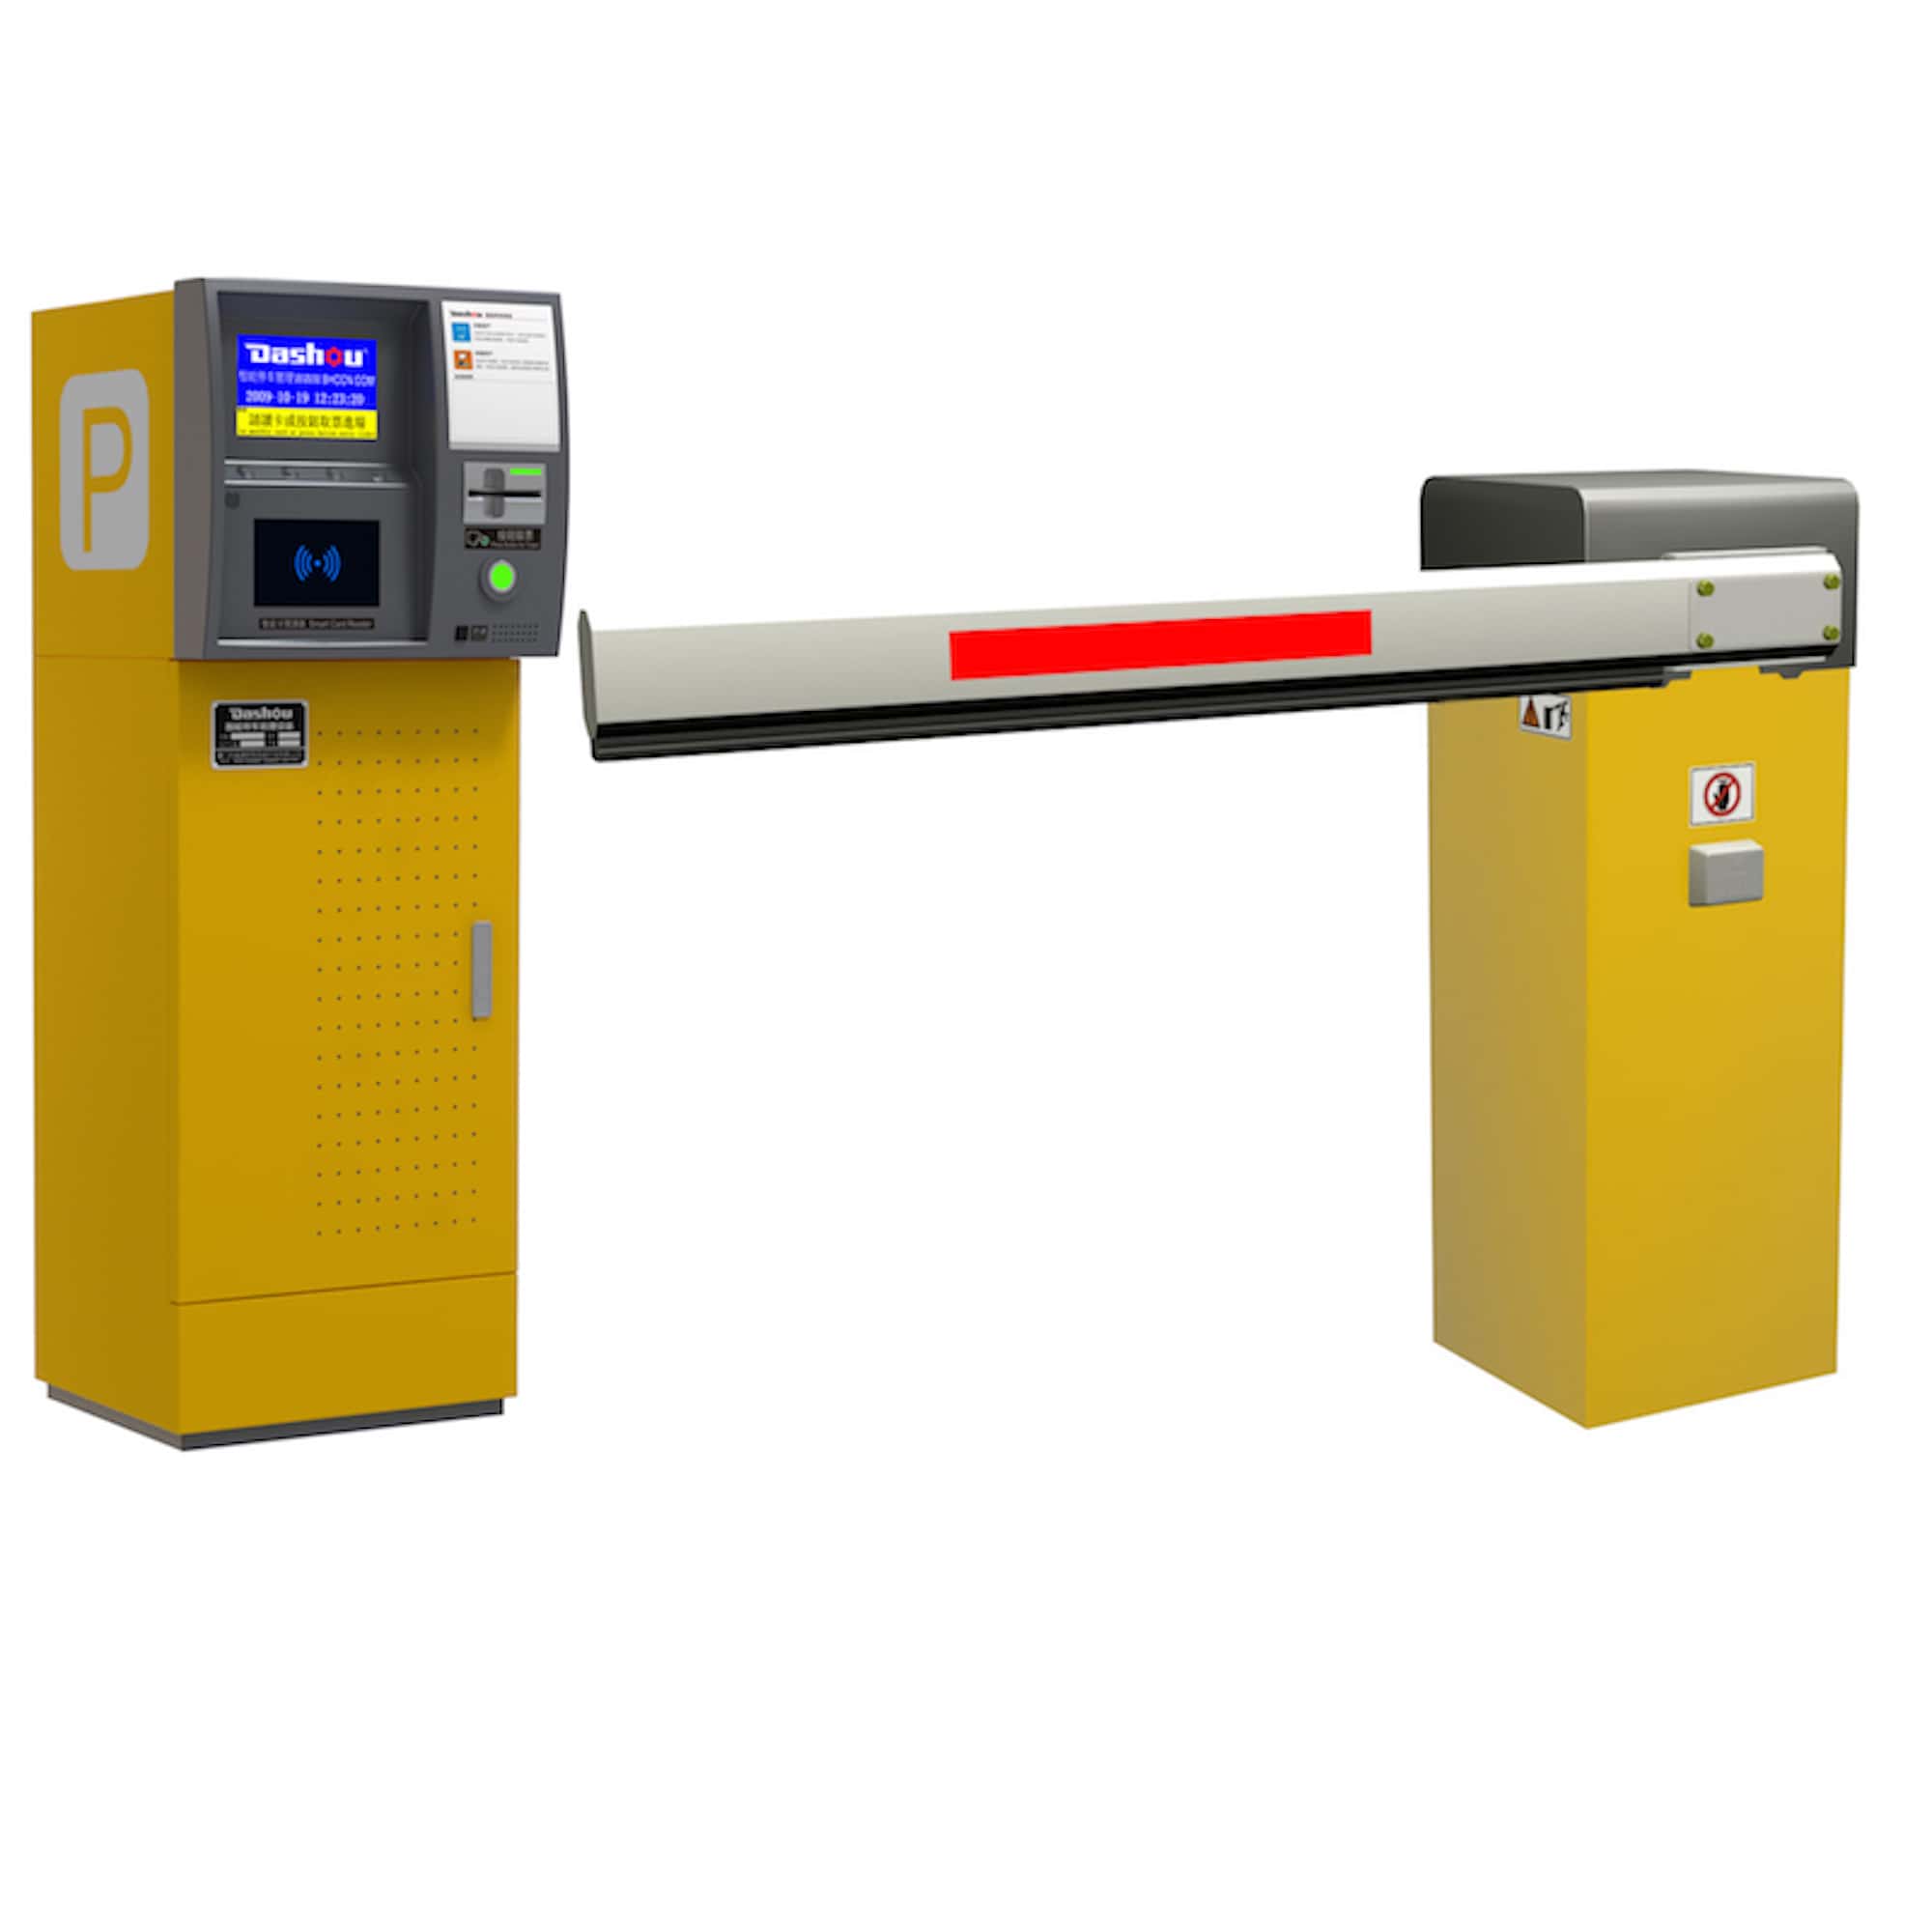 V32-810F Central Pay Card Dispensing Parking Management System